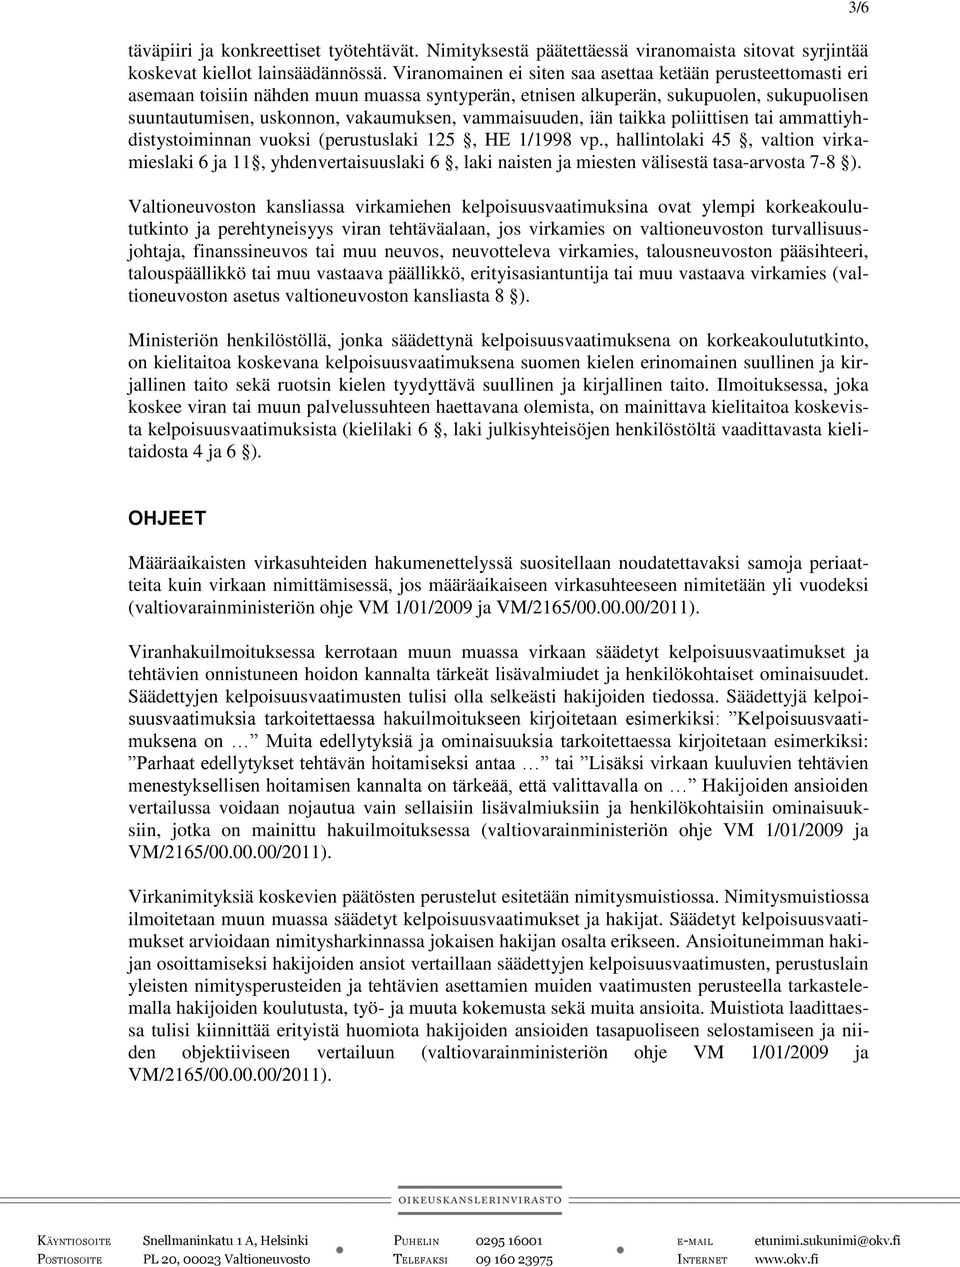 vammaisuuden, iän taikka poliittisen tai ammattiyhdistystoiminnan vuoksi (perustuslaki 125, HE 1/1998 vp.